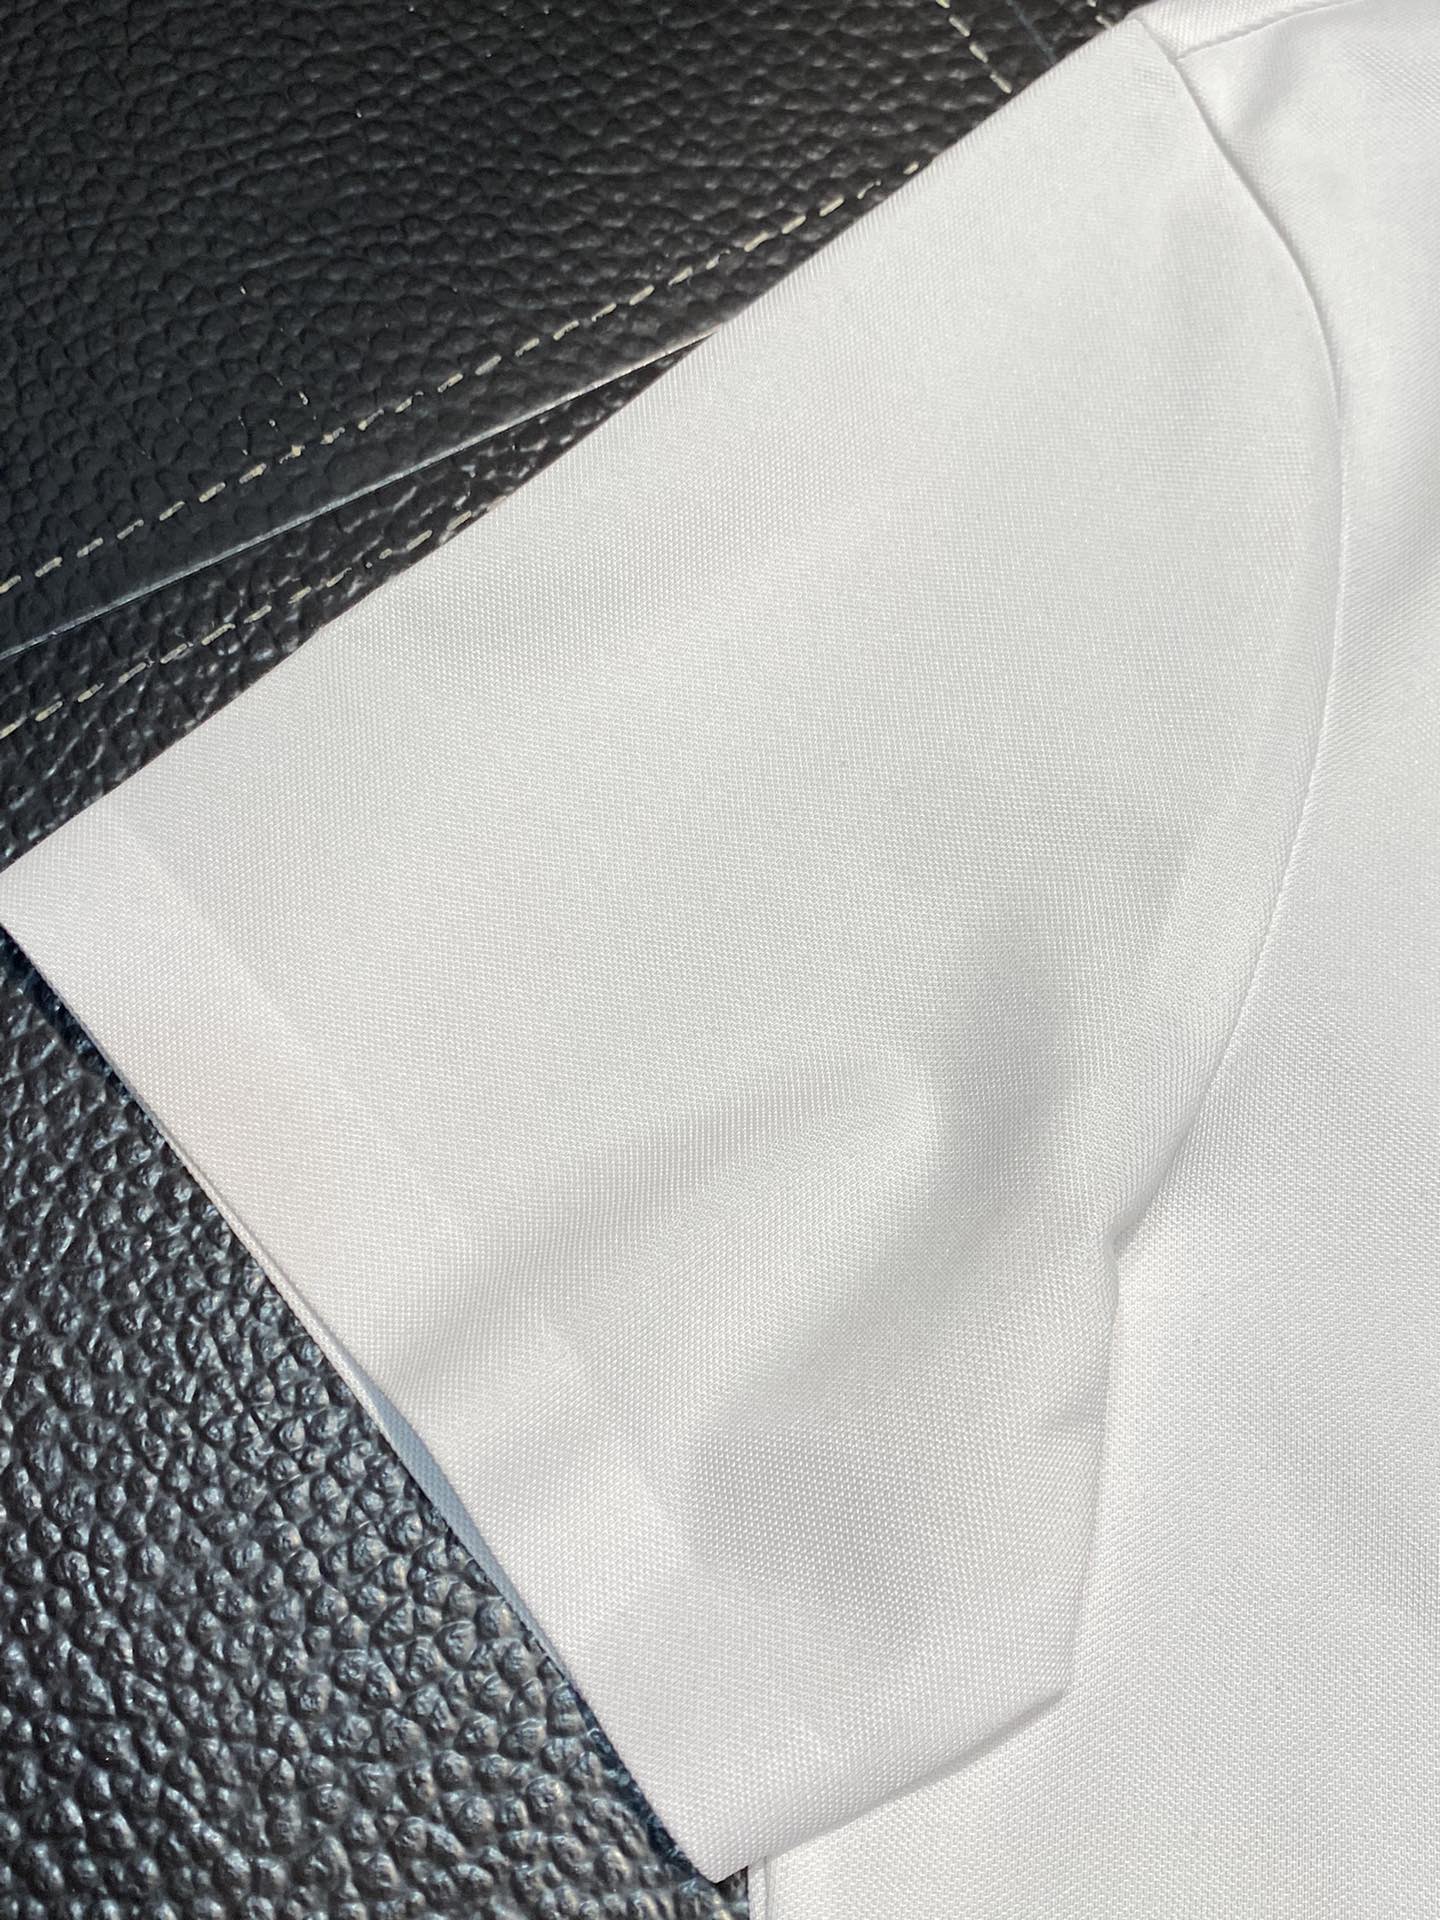 LV路易威登独家专供新款原单男士休闲Polo短袖高端定制高版本时尚百搭爆款️️进口面料手感超柔软细腻穿着